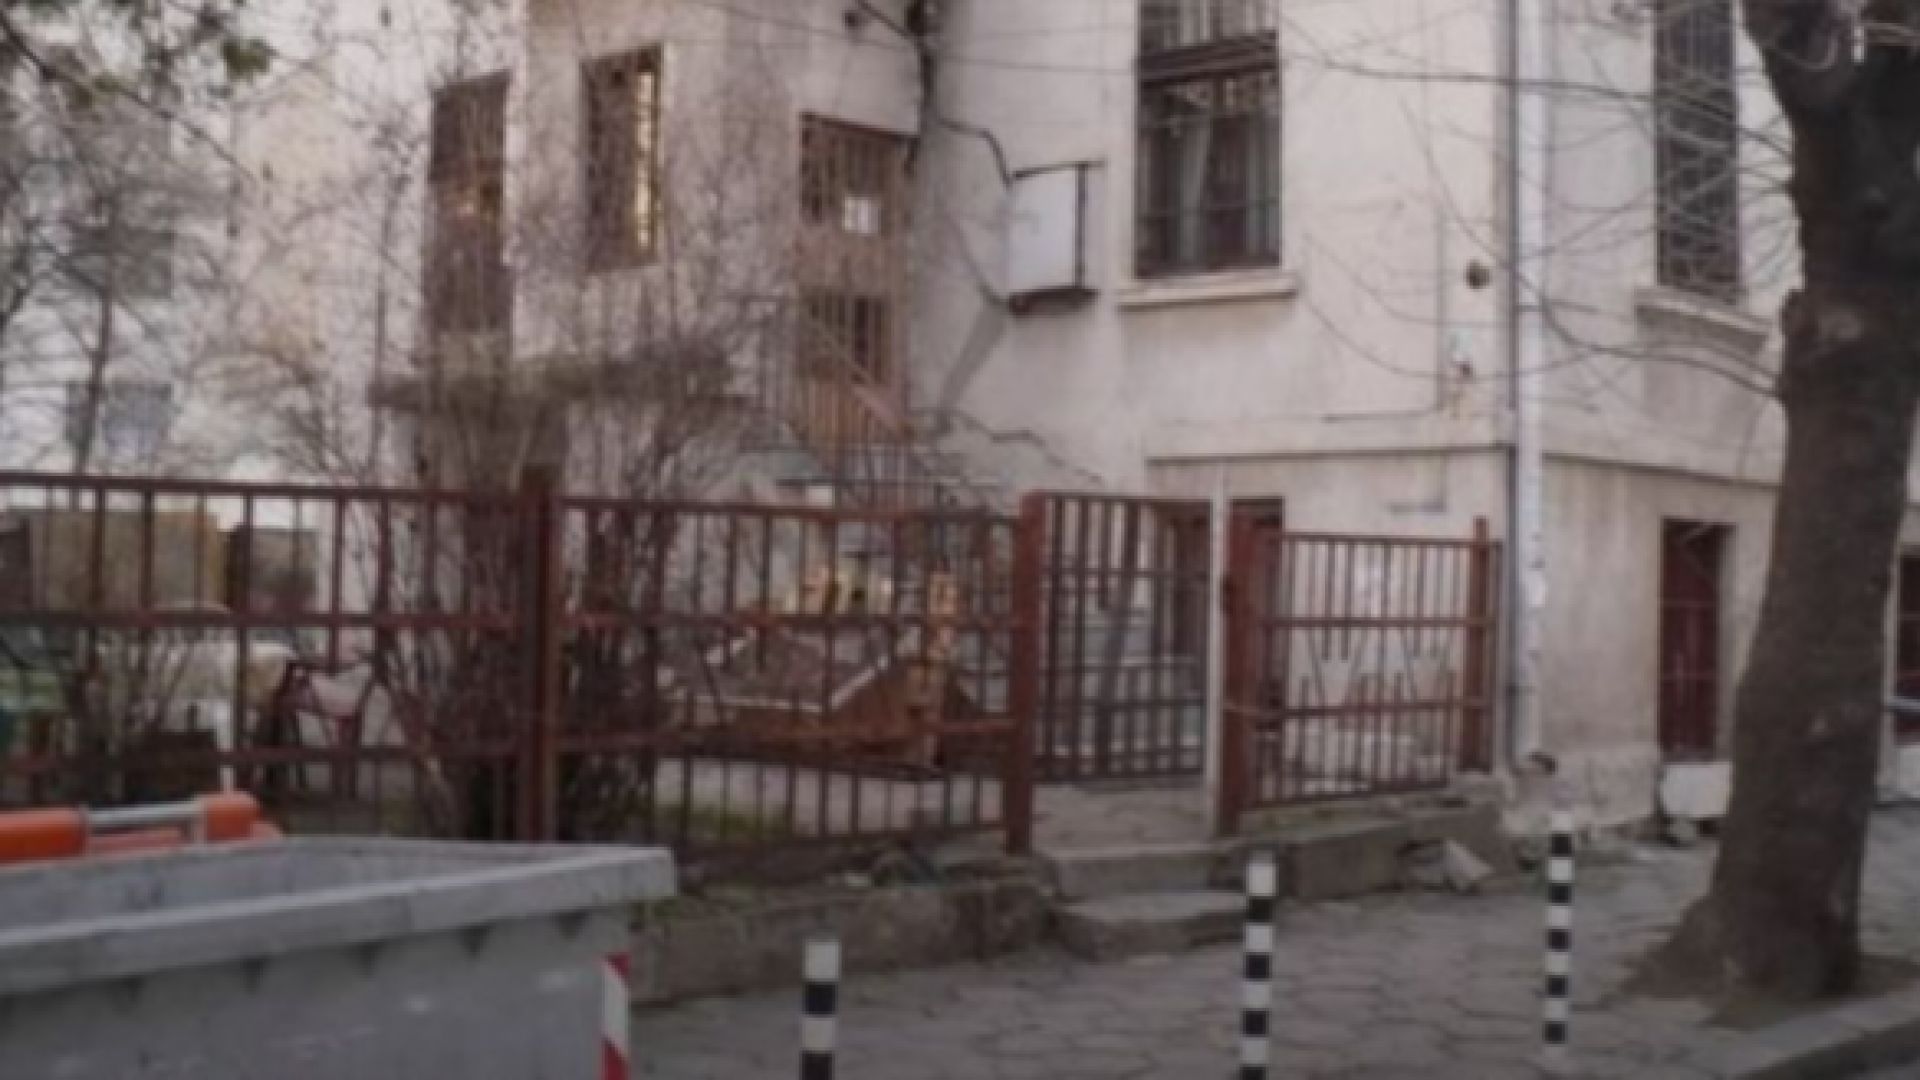 Възстановяват къщата на Райна Княгиня в София